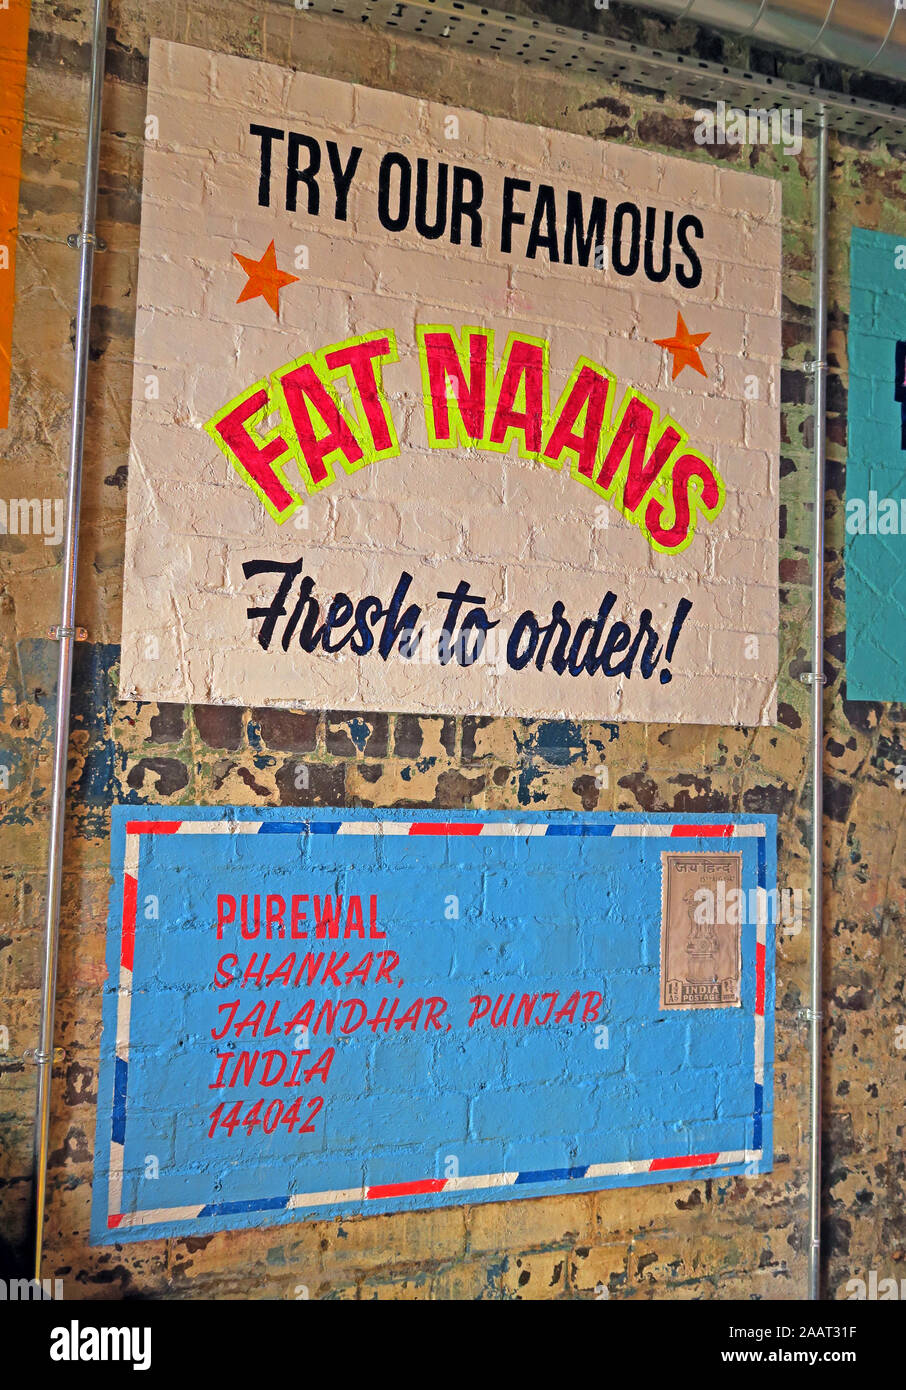 Essayez notre célèbre Naan gras, frais à l'ordre !, Brasserie indien, Snowhill , Arch 16 Livery Street, Birmingham, B3 1EU Banque D'Images